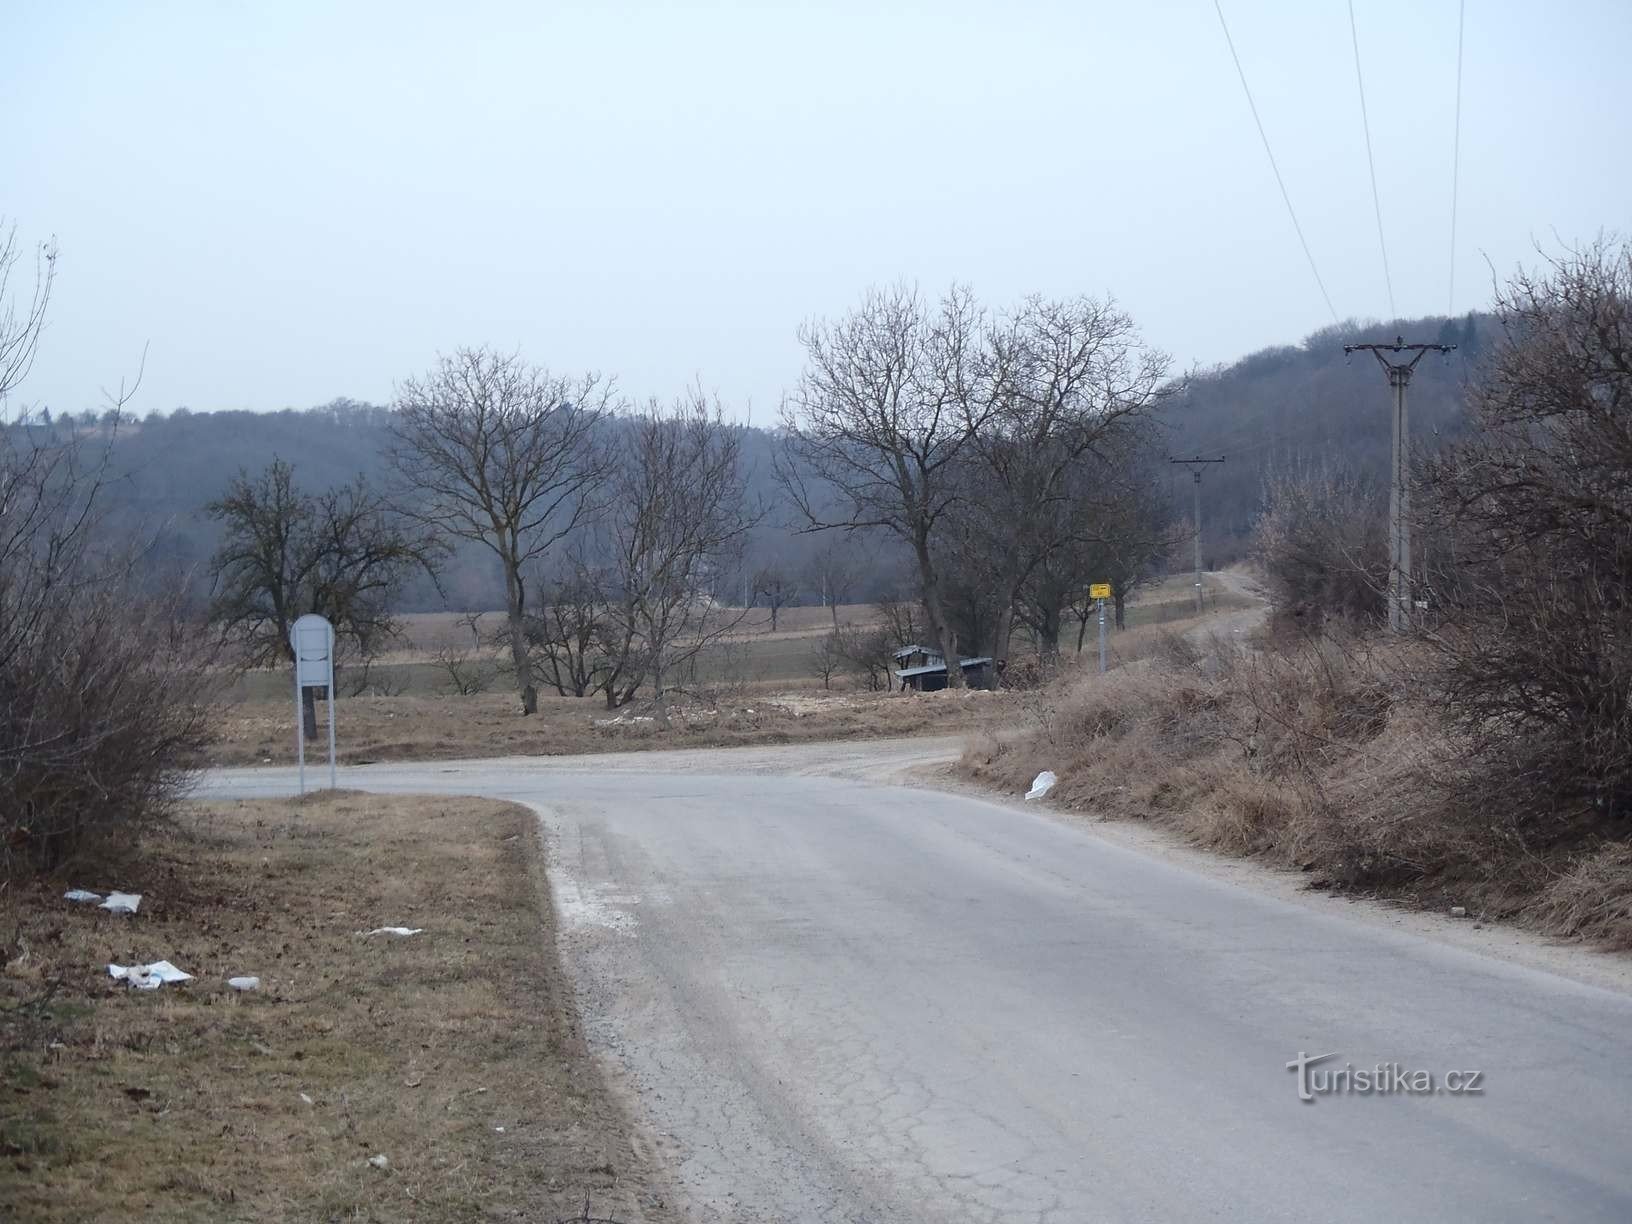 Călătorie de la Podolí la Mariánské údolí - 6.2.2012 februarie XNUMX